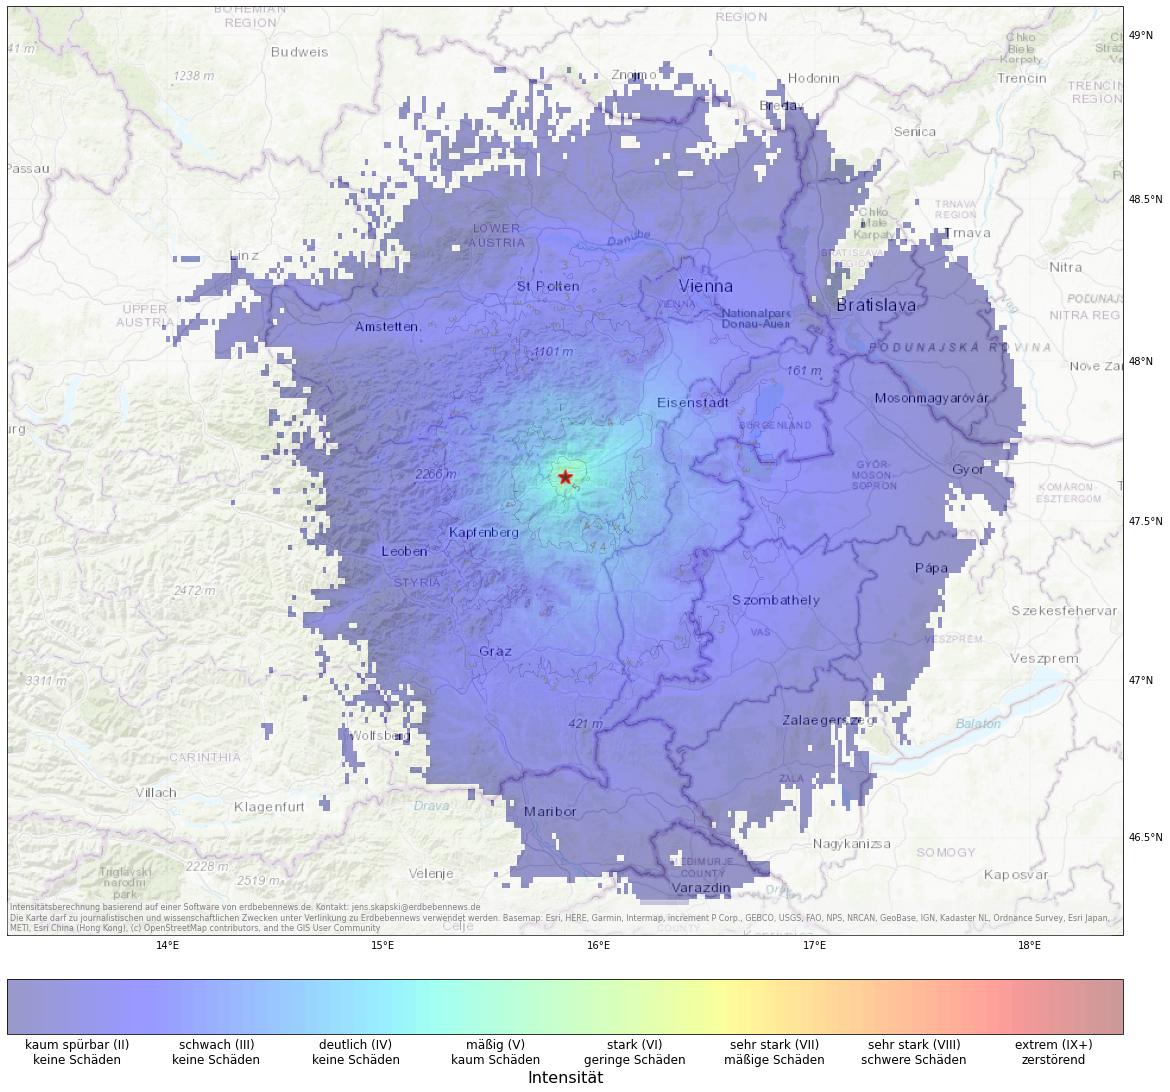 Berechnete Intensität (ShakeMap) des Erdbebens der Stärke 4.4 am 1. Februar, 2:59 Uhr in Österreich